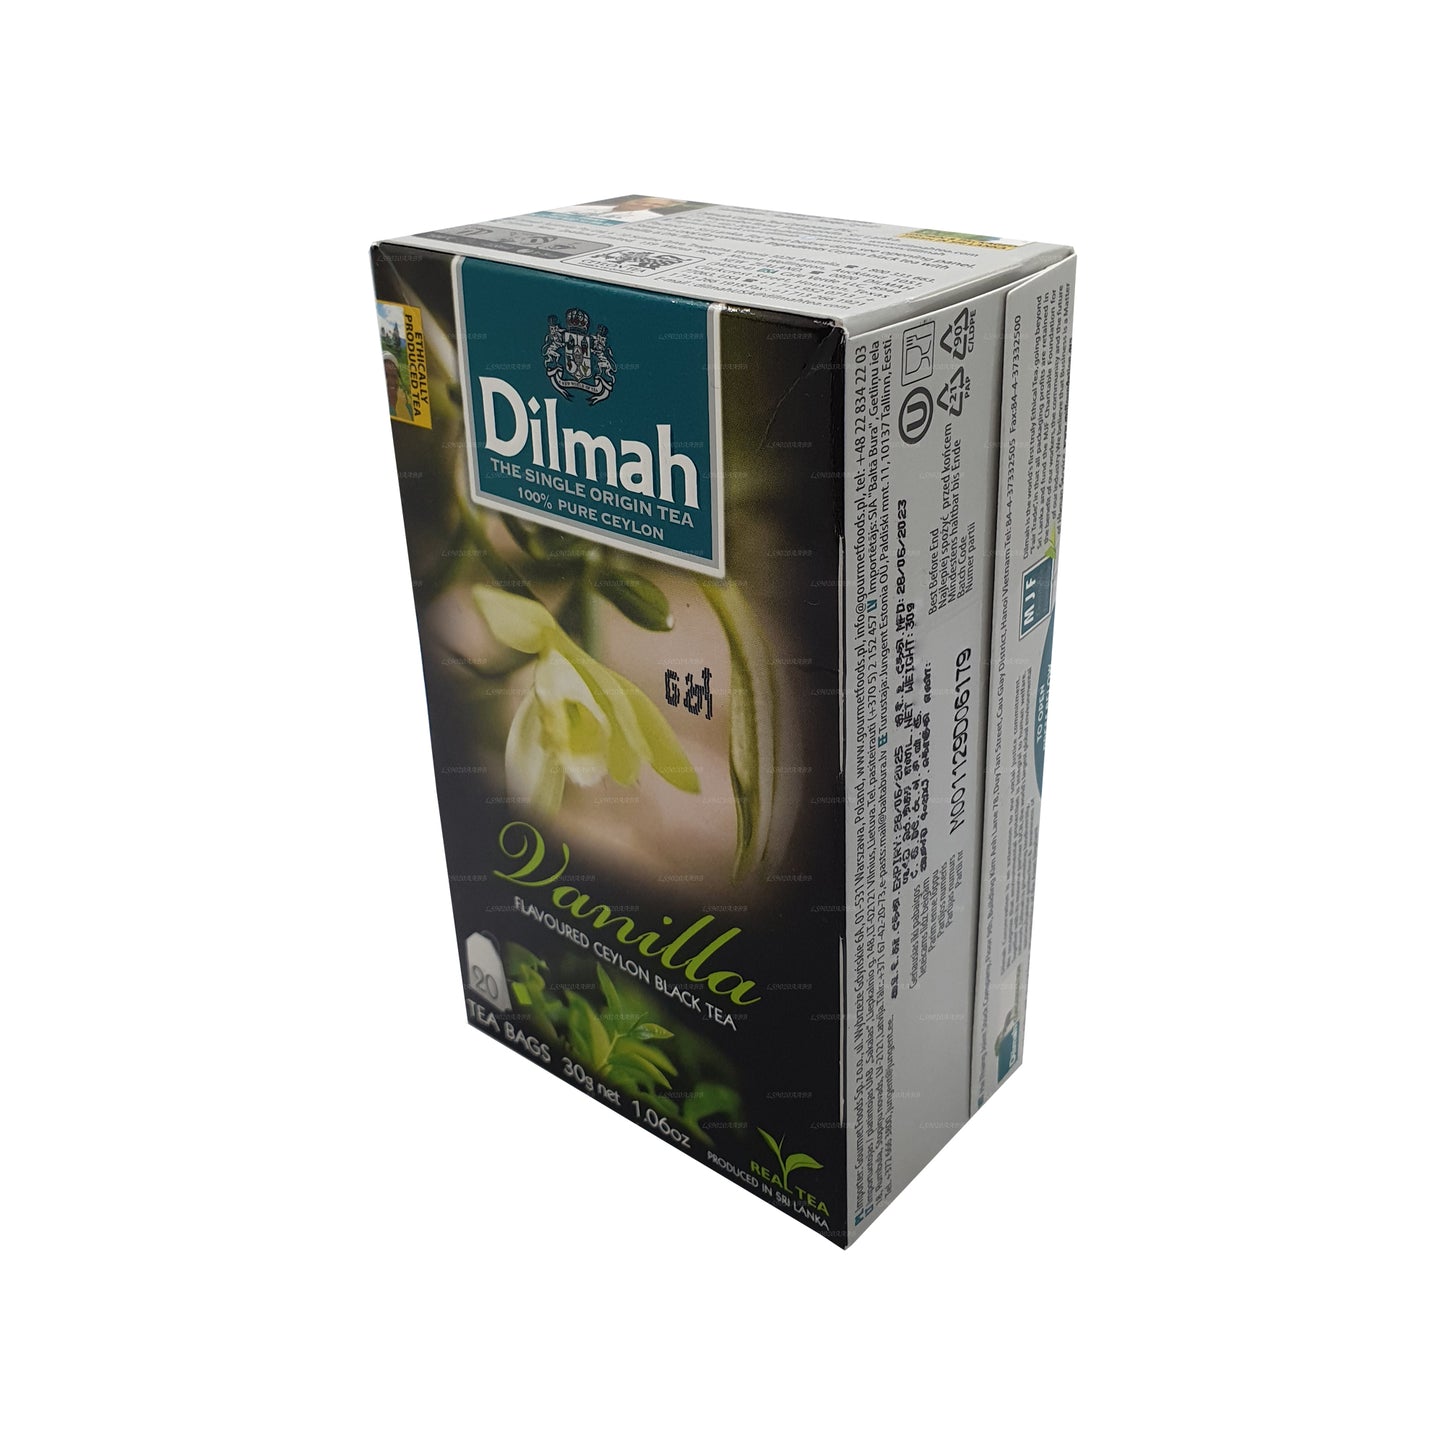 Dilmah Vanilje maitsestatud tee (40g) 20 teekotid